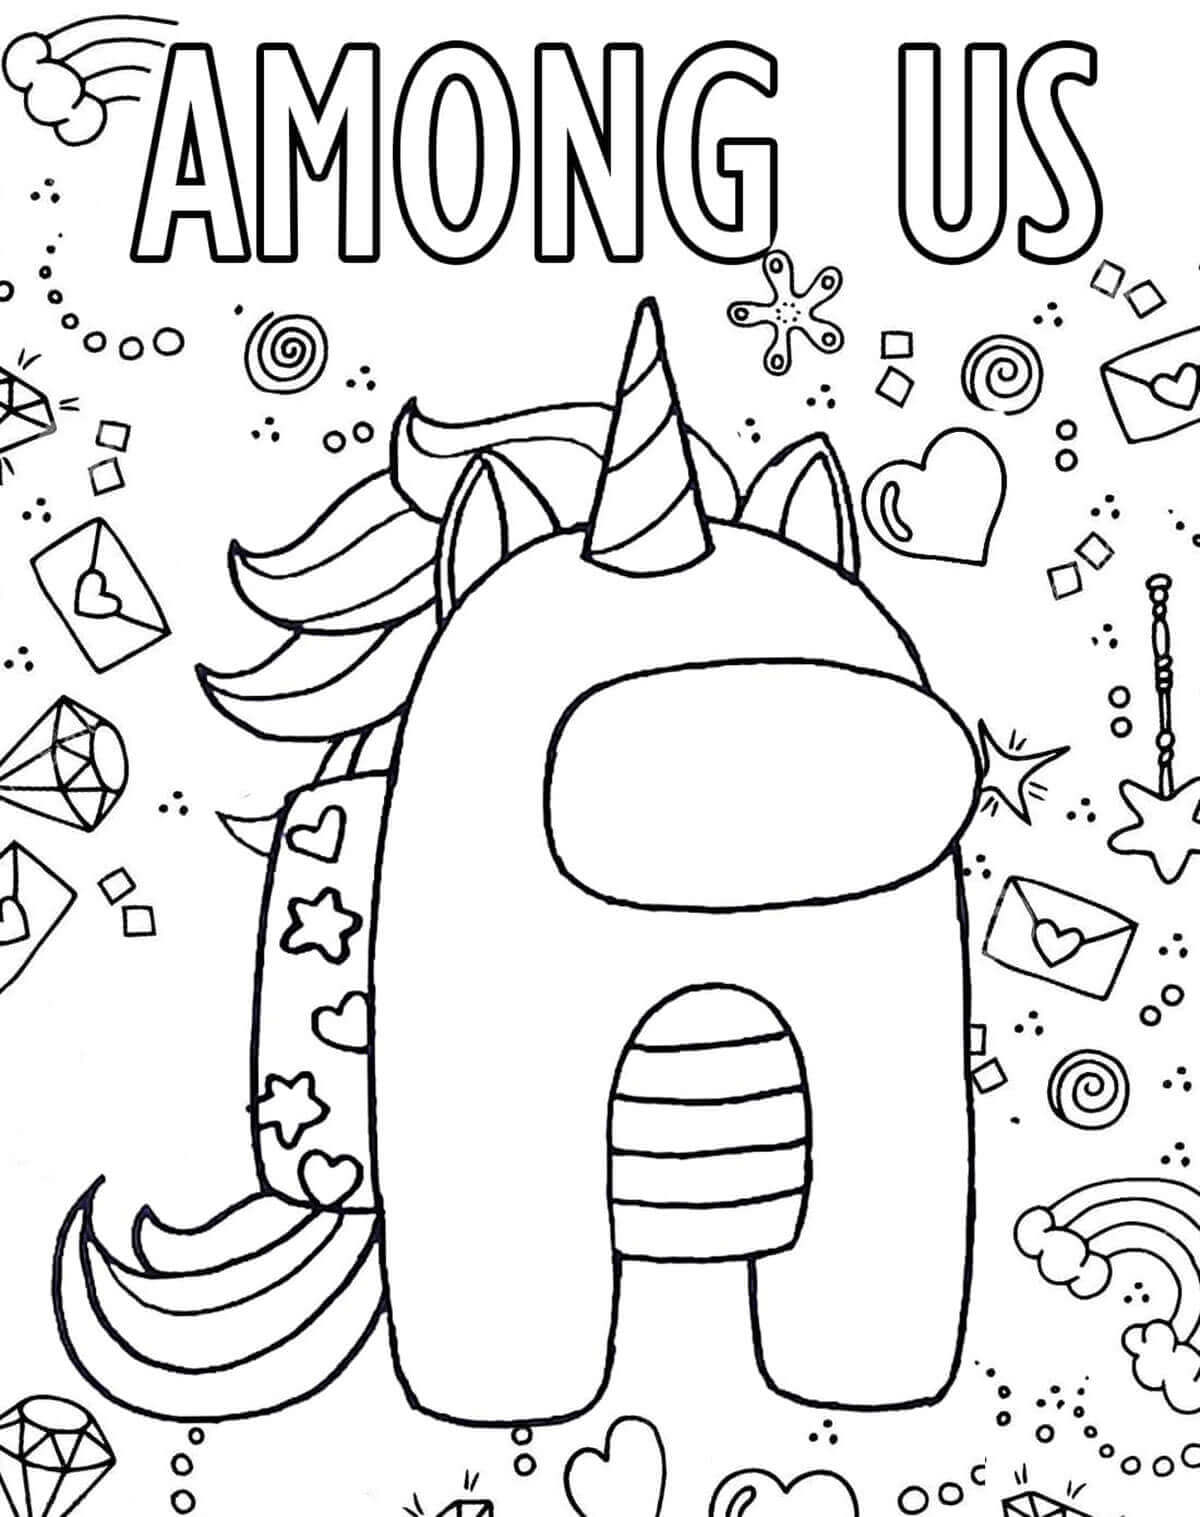 Among Us Unicorn